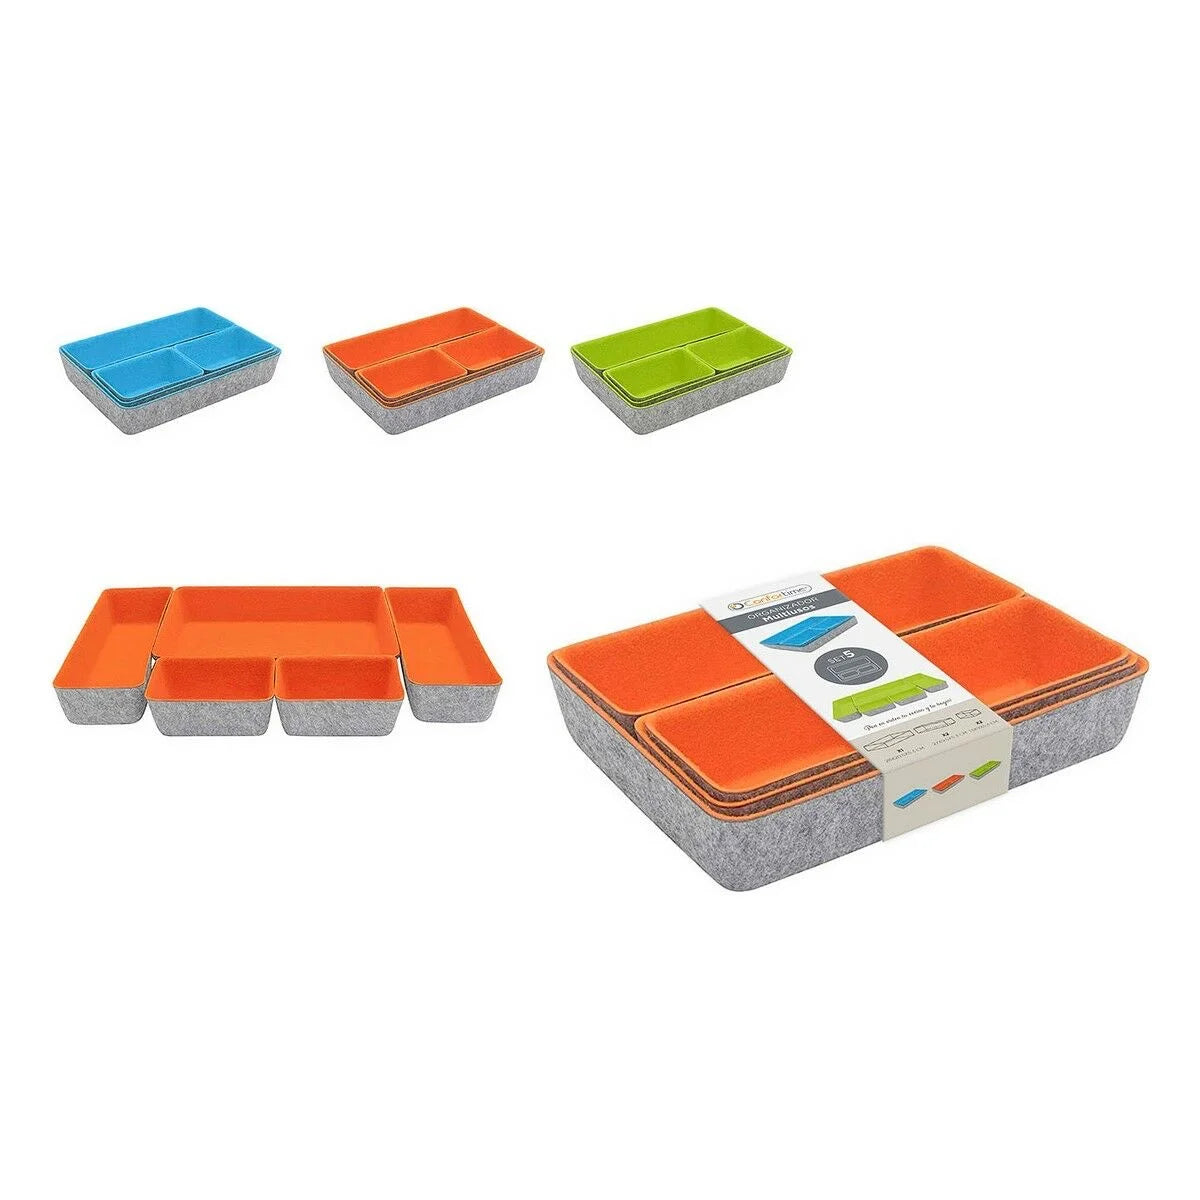 Sett med 5 oppbevaringsbokser i 3 forskjellige farger - oransje, blå og grønn